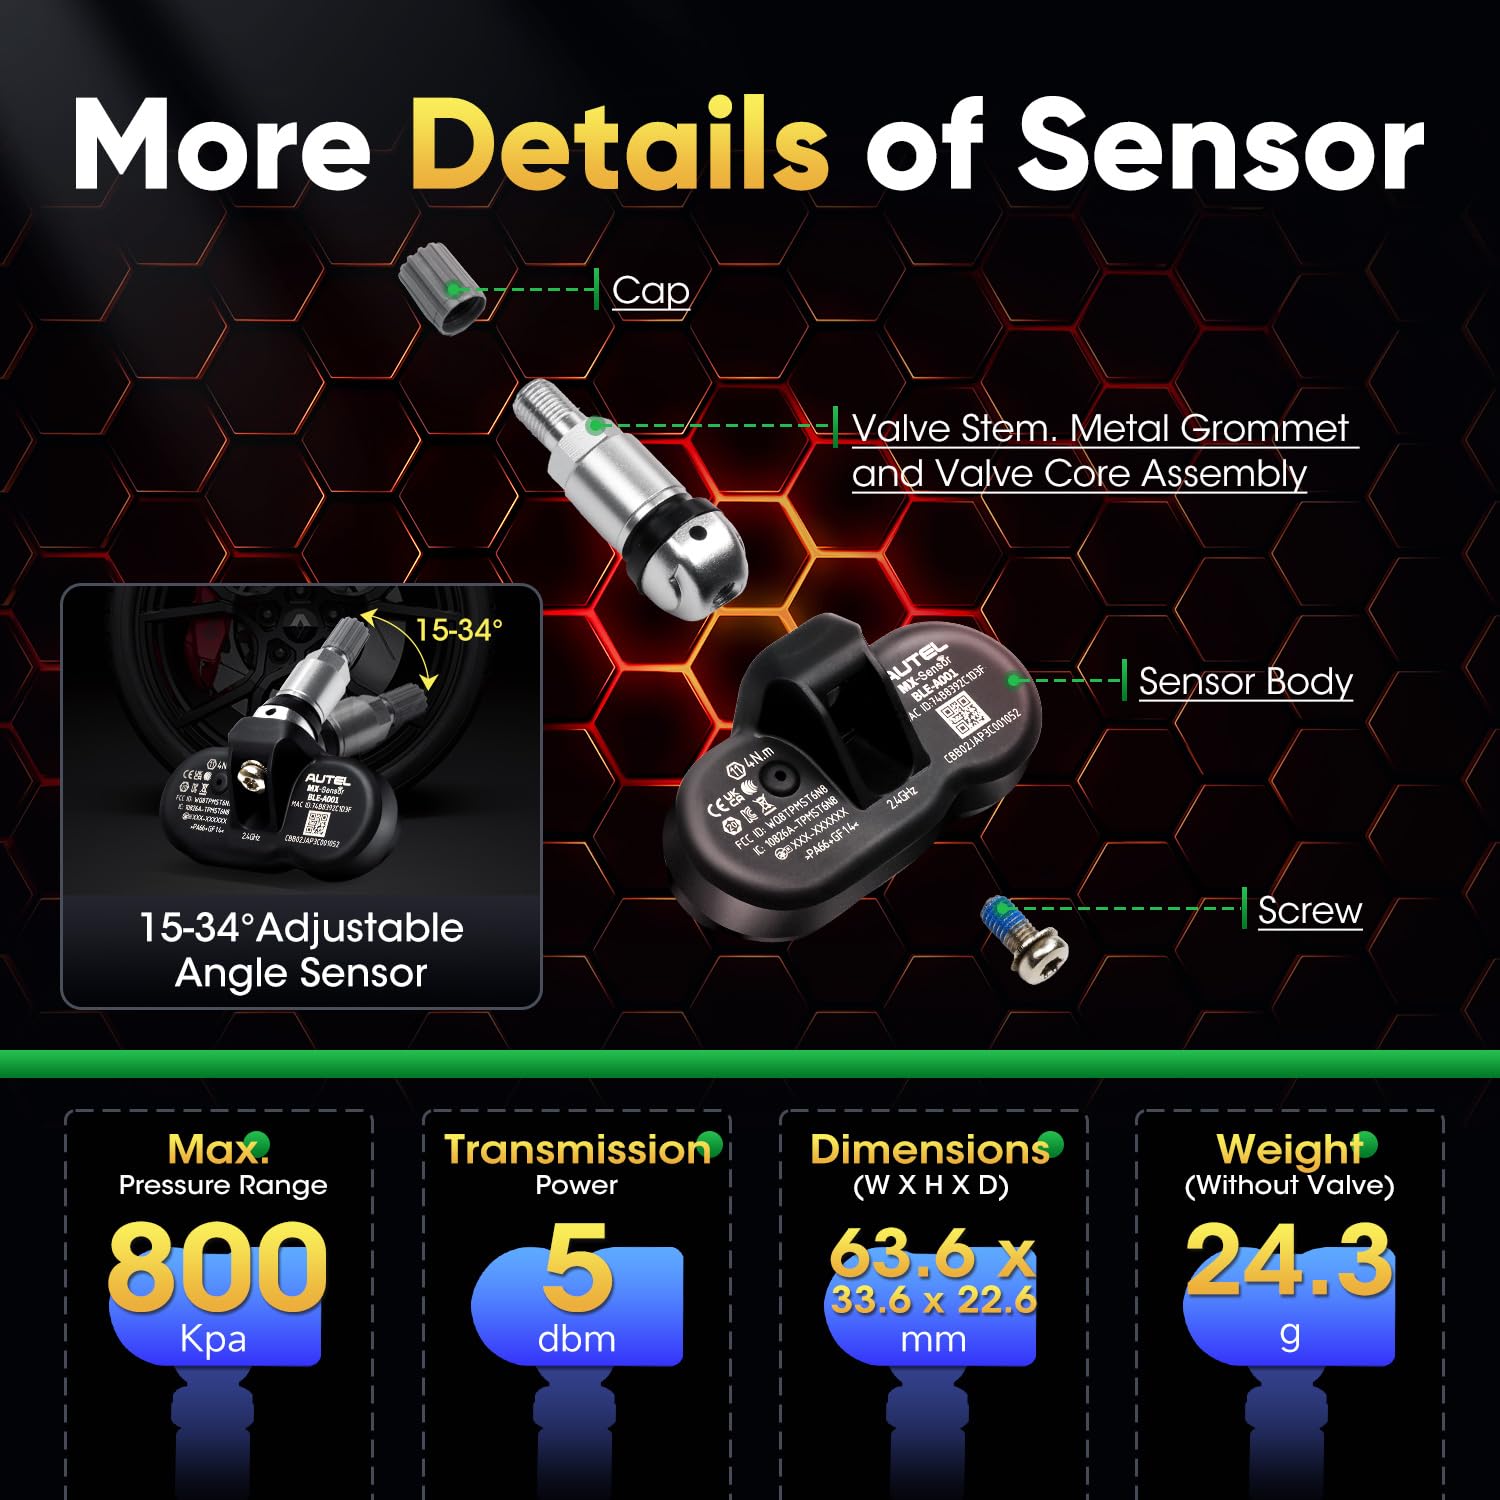 More Details of Sensor